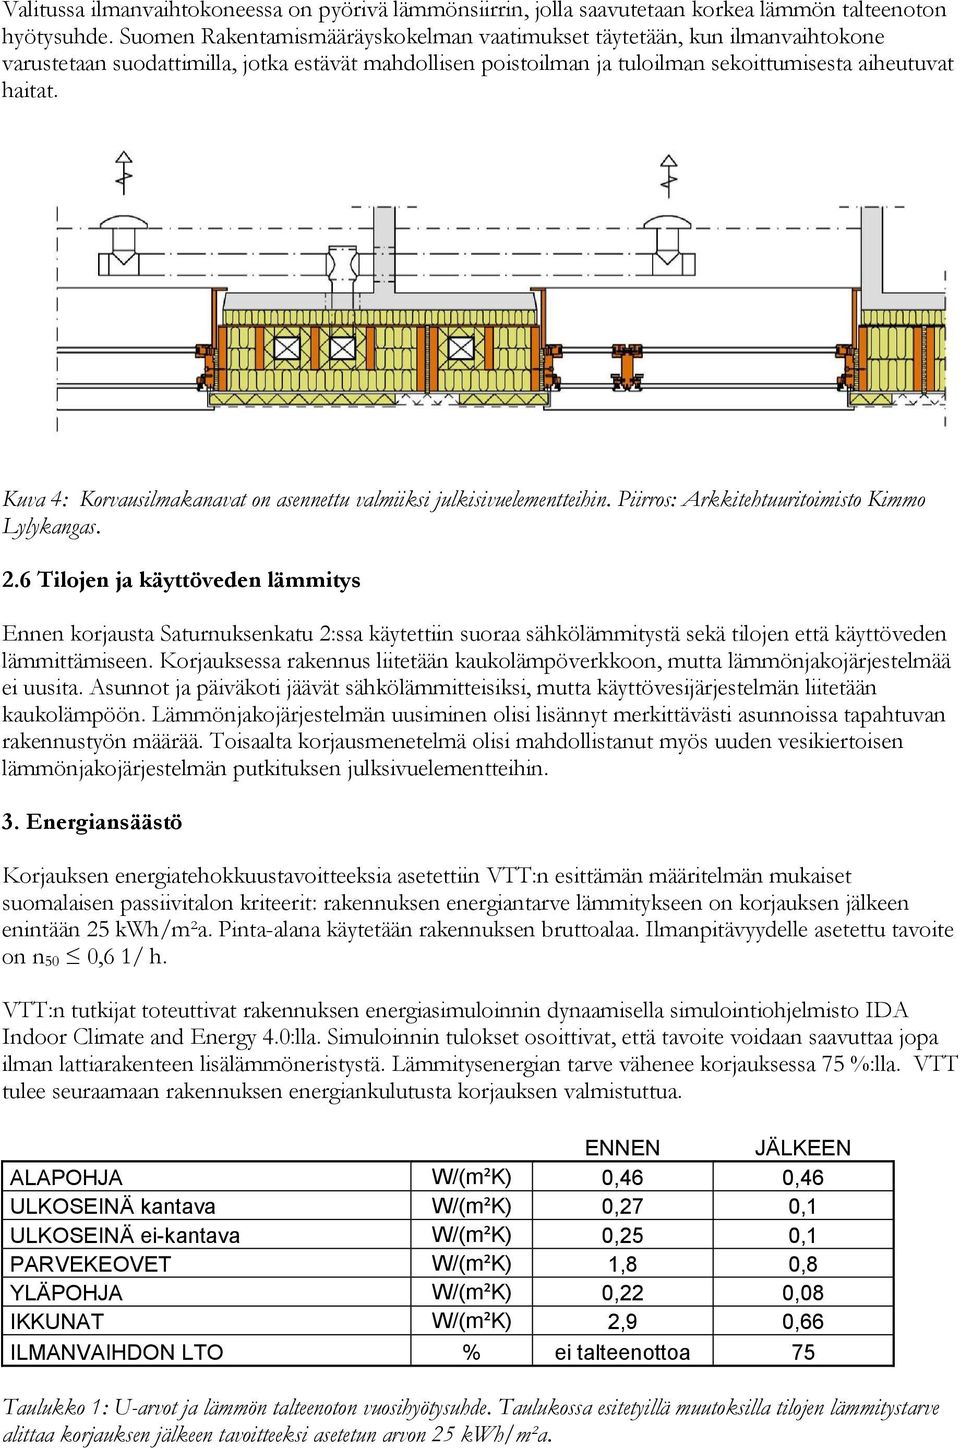 Kuva 4: Korvausilmakanavat on asennettu valmiiksi julkisivuelementteihin. Piirros: Arkkitehtuuritoimisto Kimmo Lylykangas. 2.